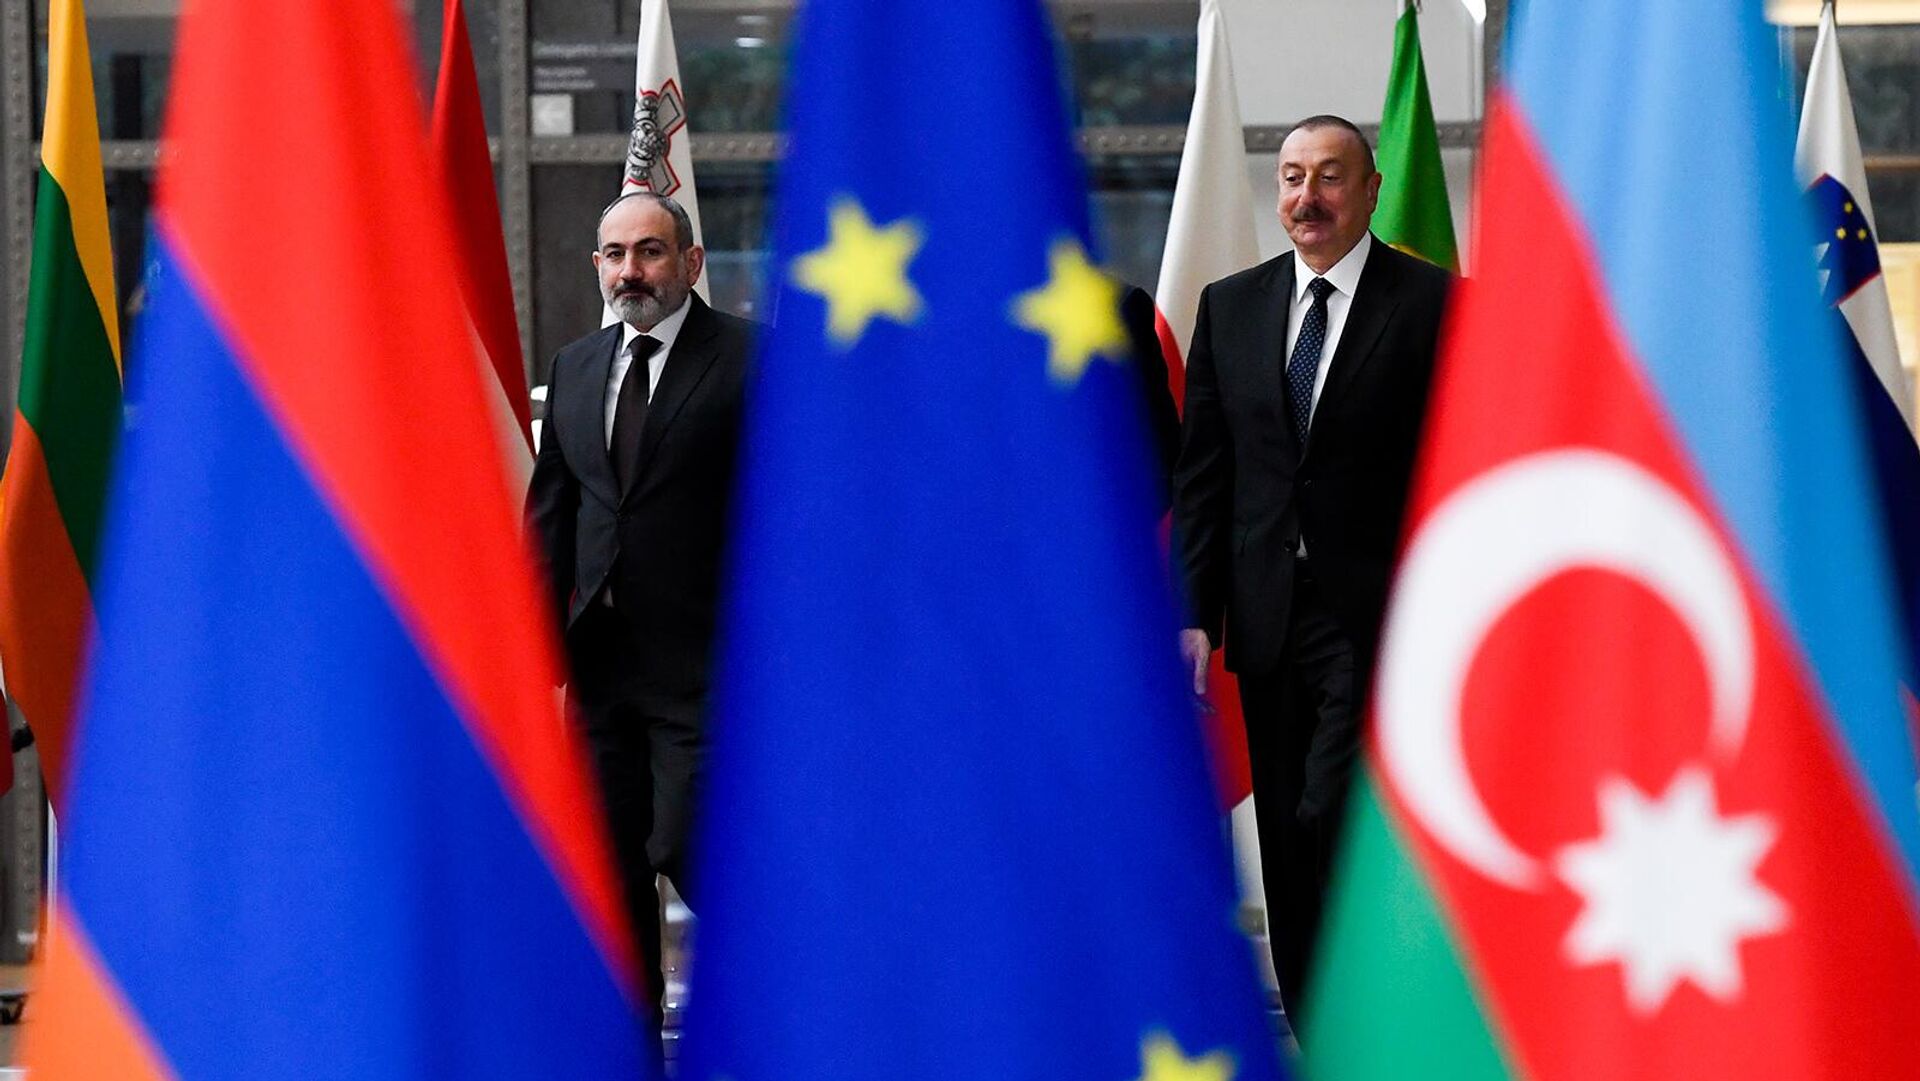 Activation of the Armenian-Azerbaijani negotiations